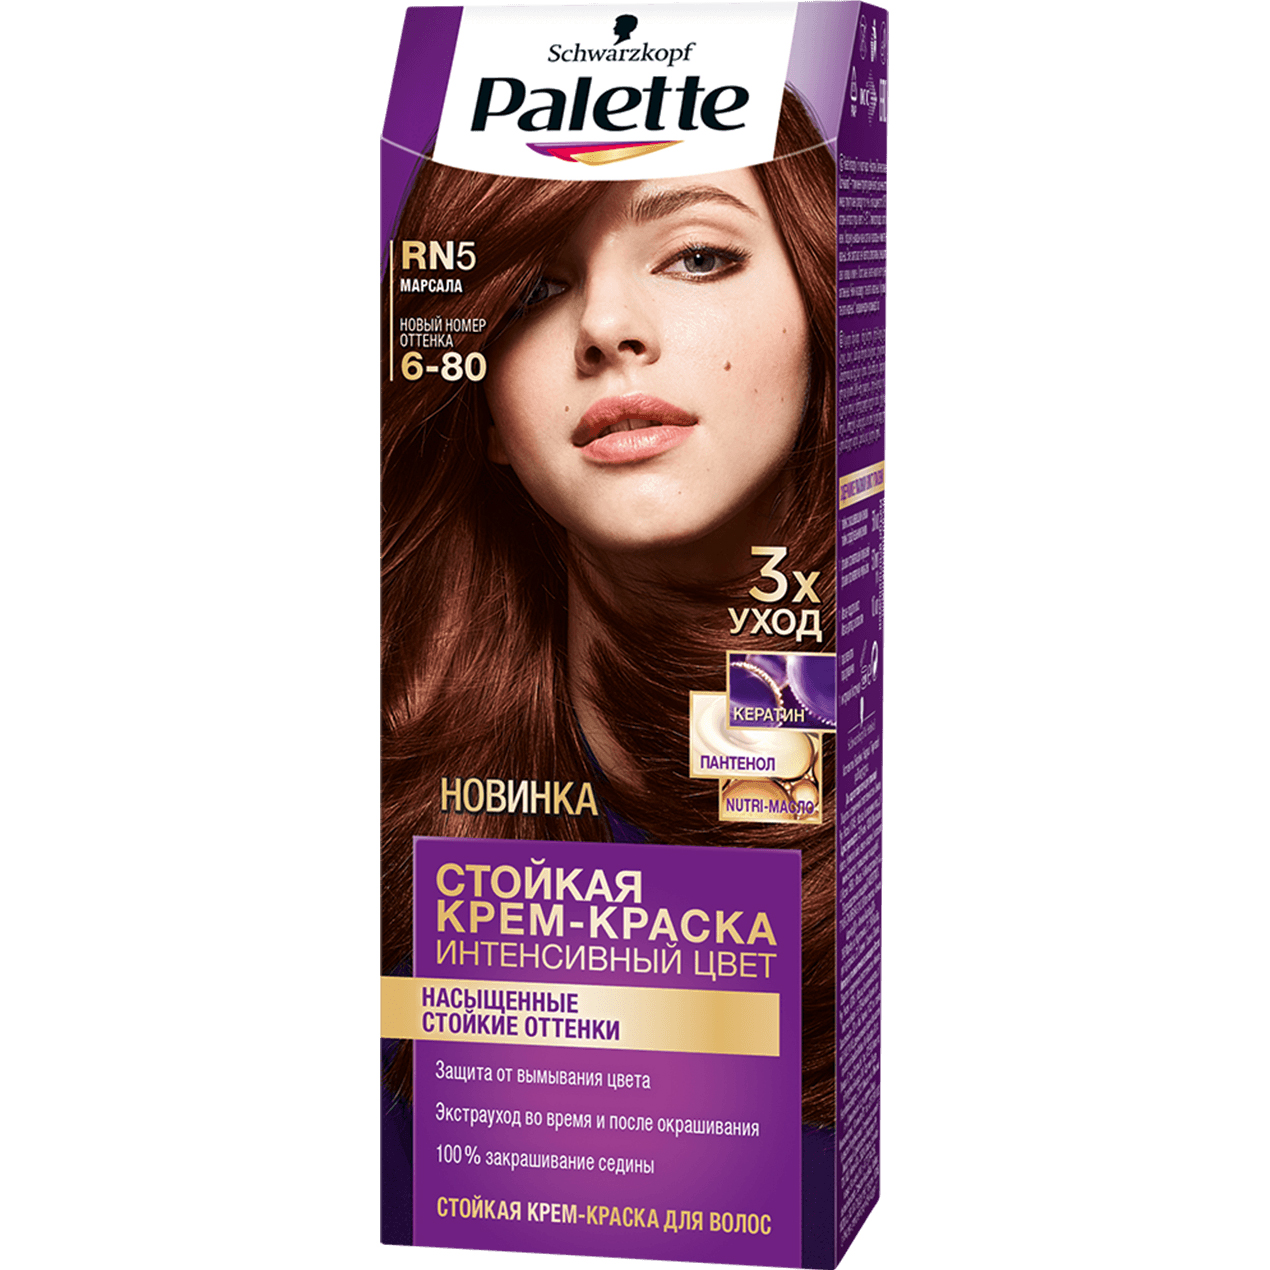 Крем-краска для волос Palette Интенсивный цвет 6-80, RN5 Марсала 110 мл стойкая крем краска для волос тон золотистый каштан 115 мл